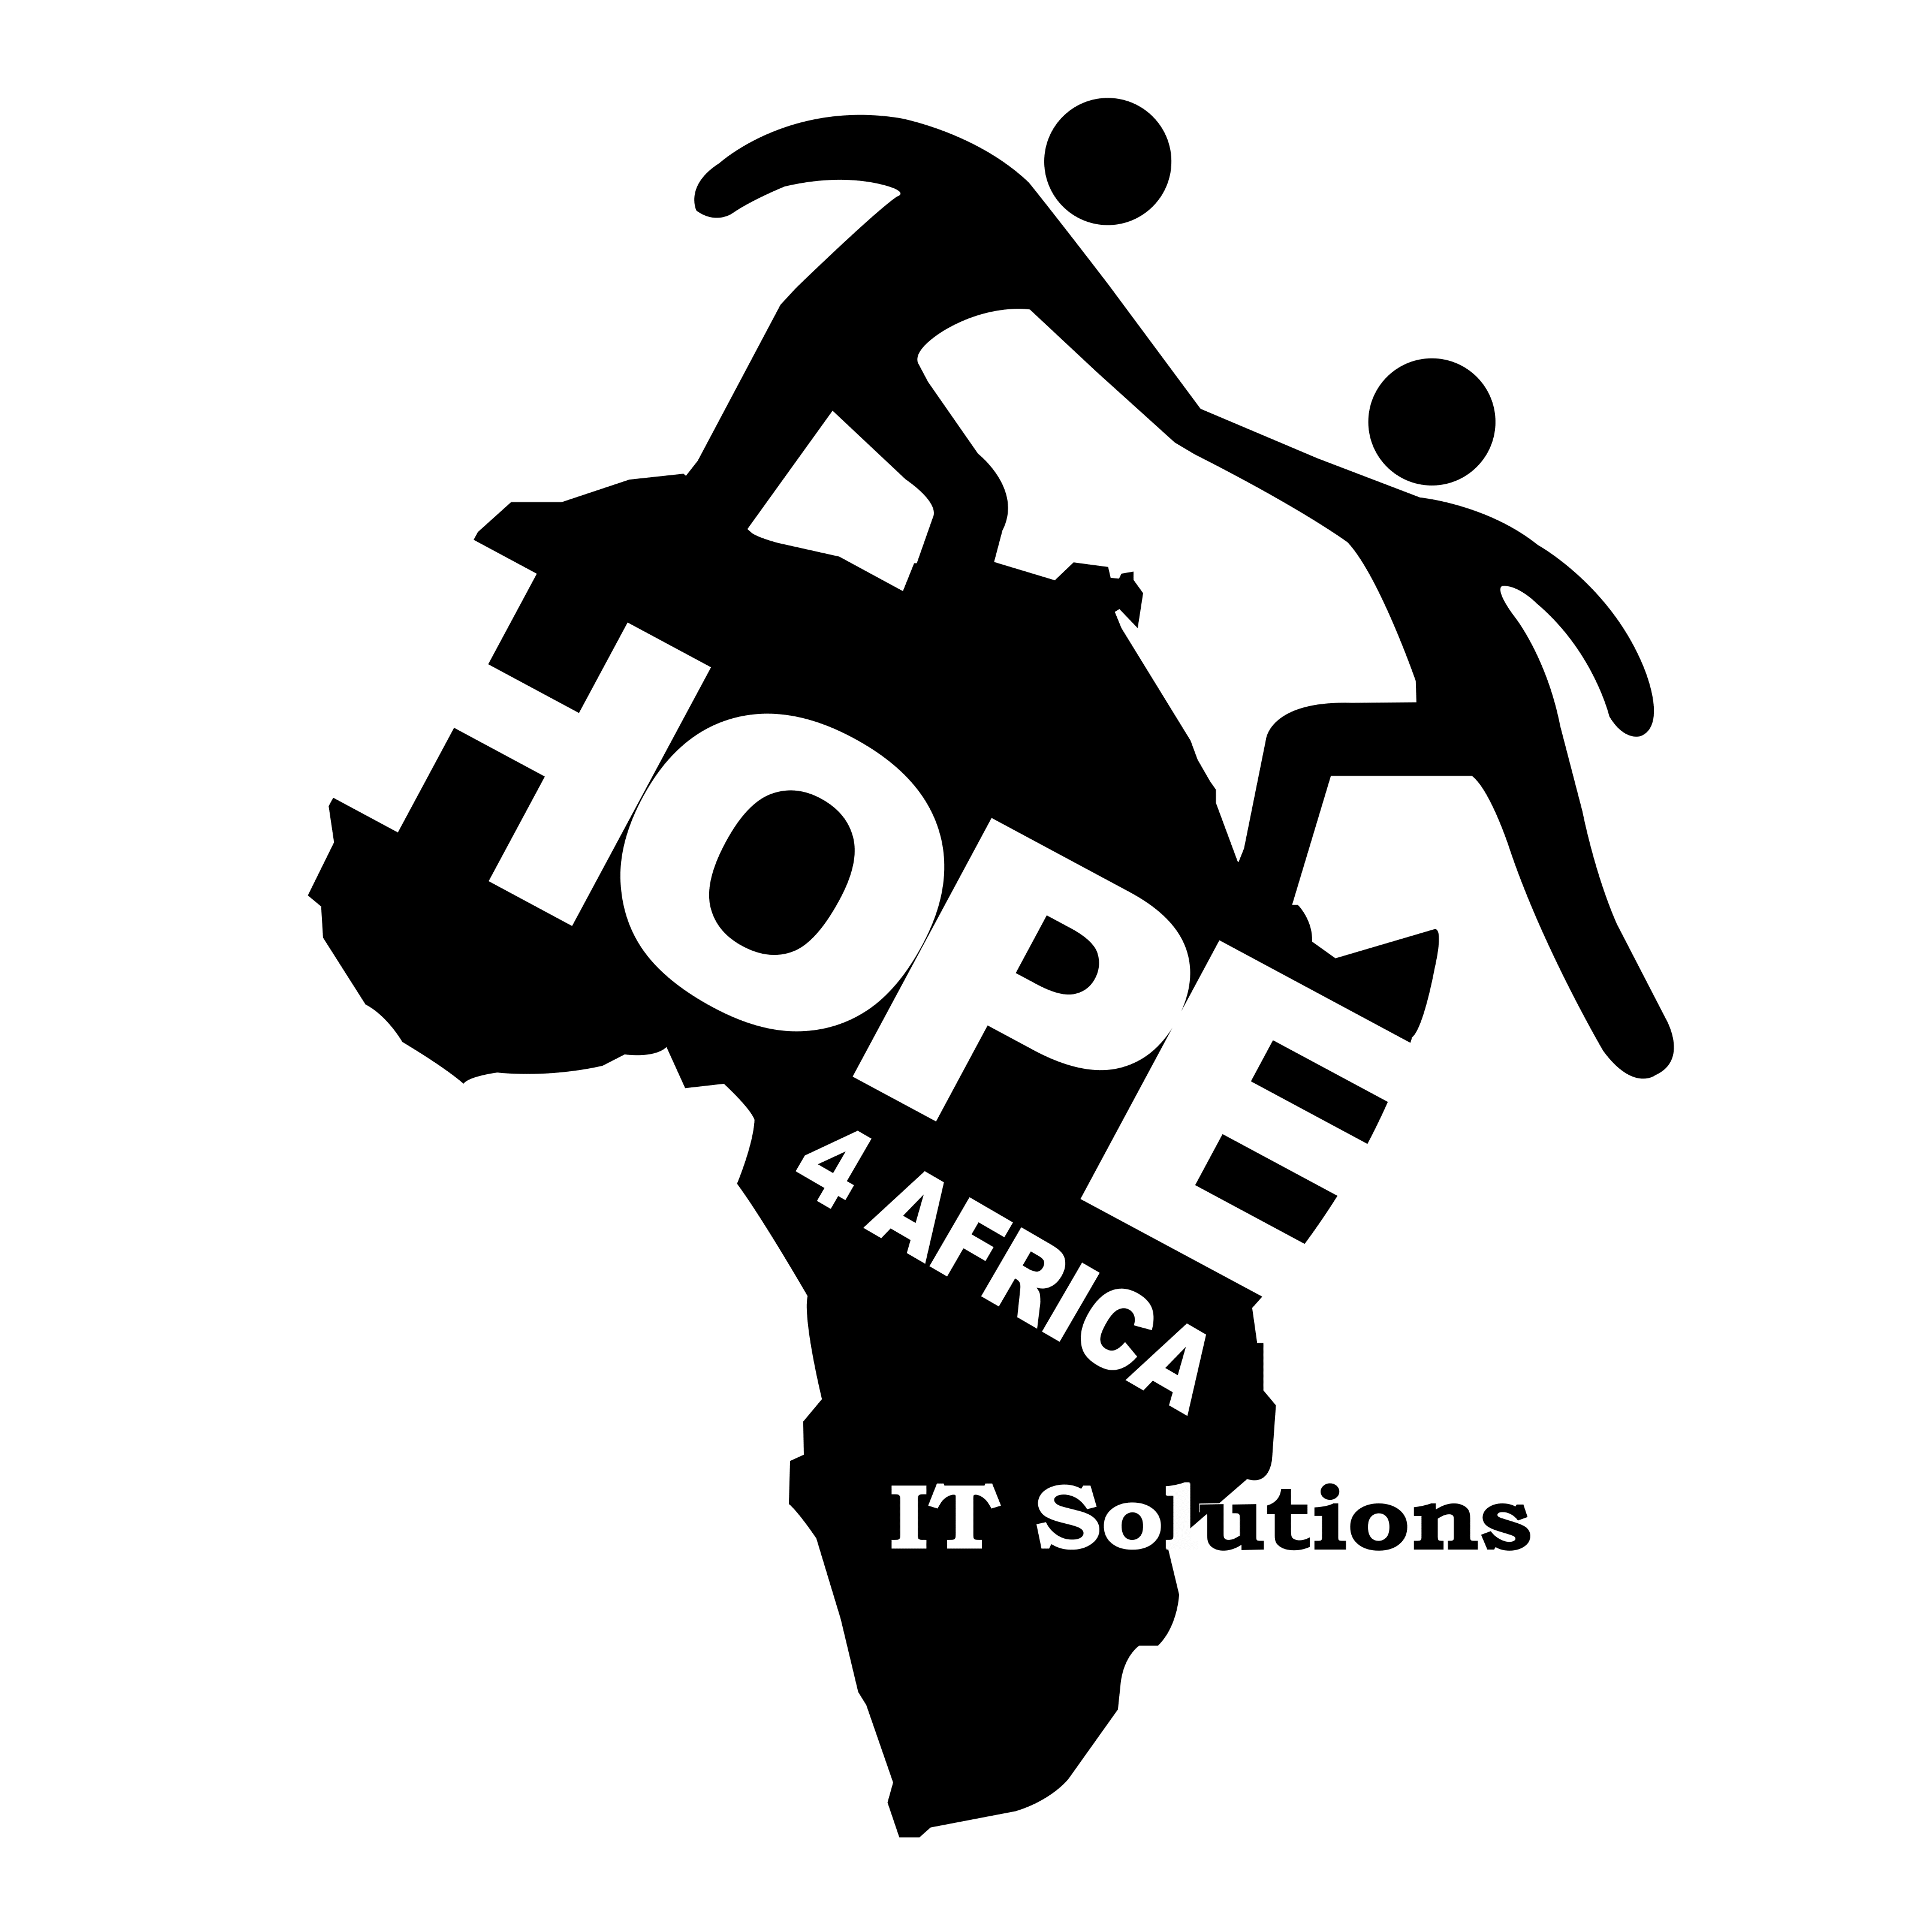 Hope For Afrika Ltd